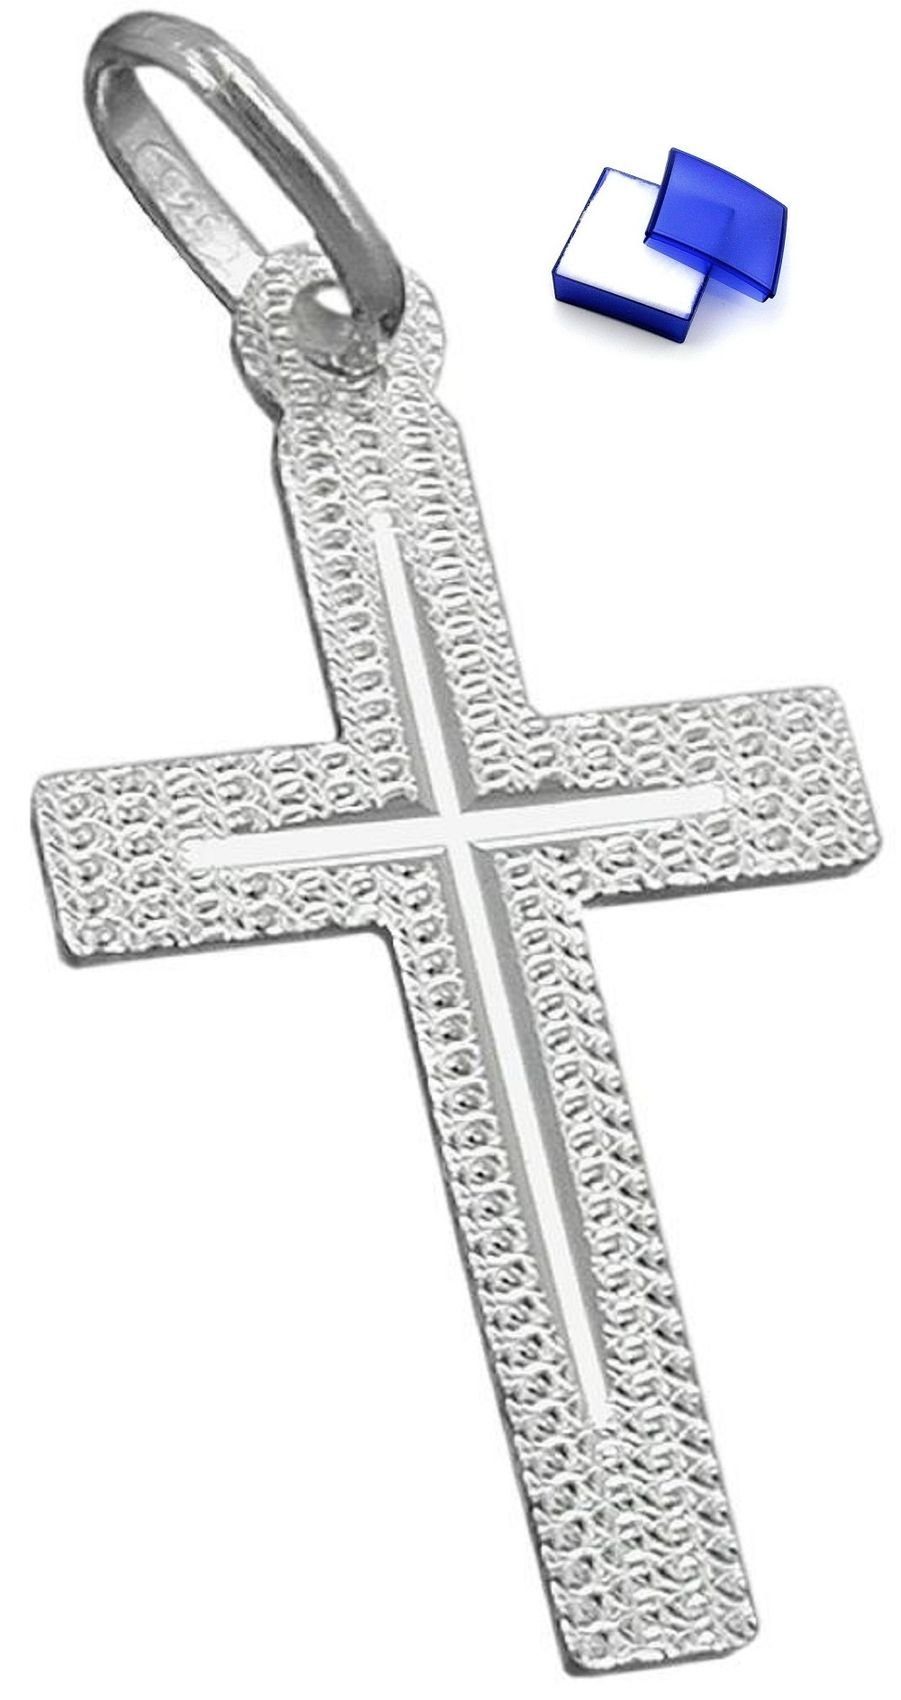 unbespielt Kreuzanhänger Kettenanhänger Anhänger Kreuz diamantiert 925 Silber 23 x 13 mm inkl. kleiner Schmuckbox, Silberschmuck für Damen und Herren